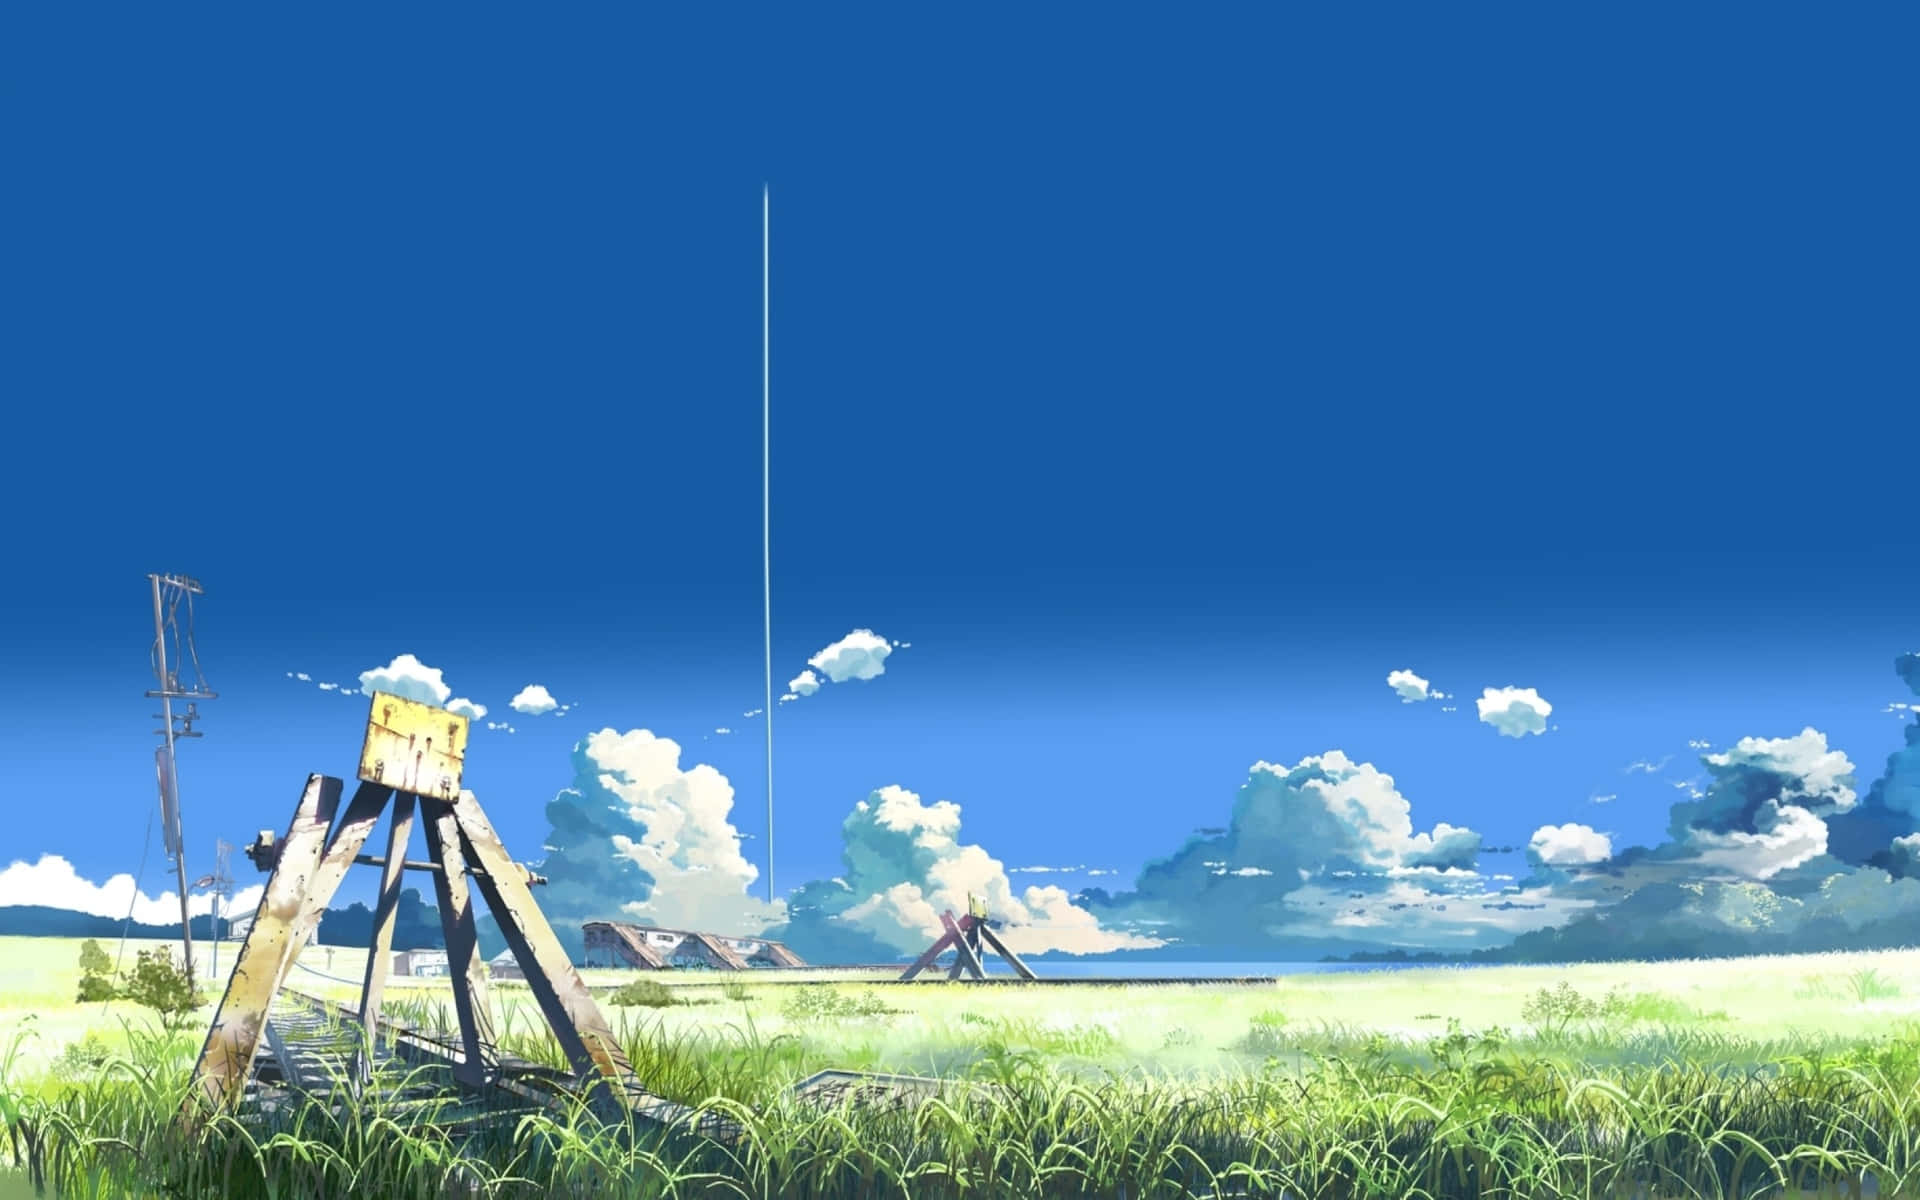 Celebrating the works of the iconic director, Makoto Shinkai